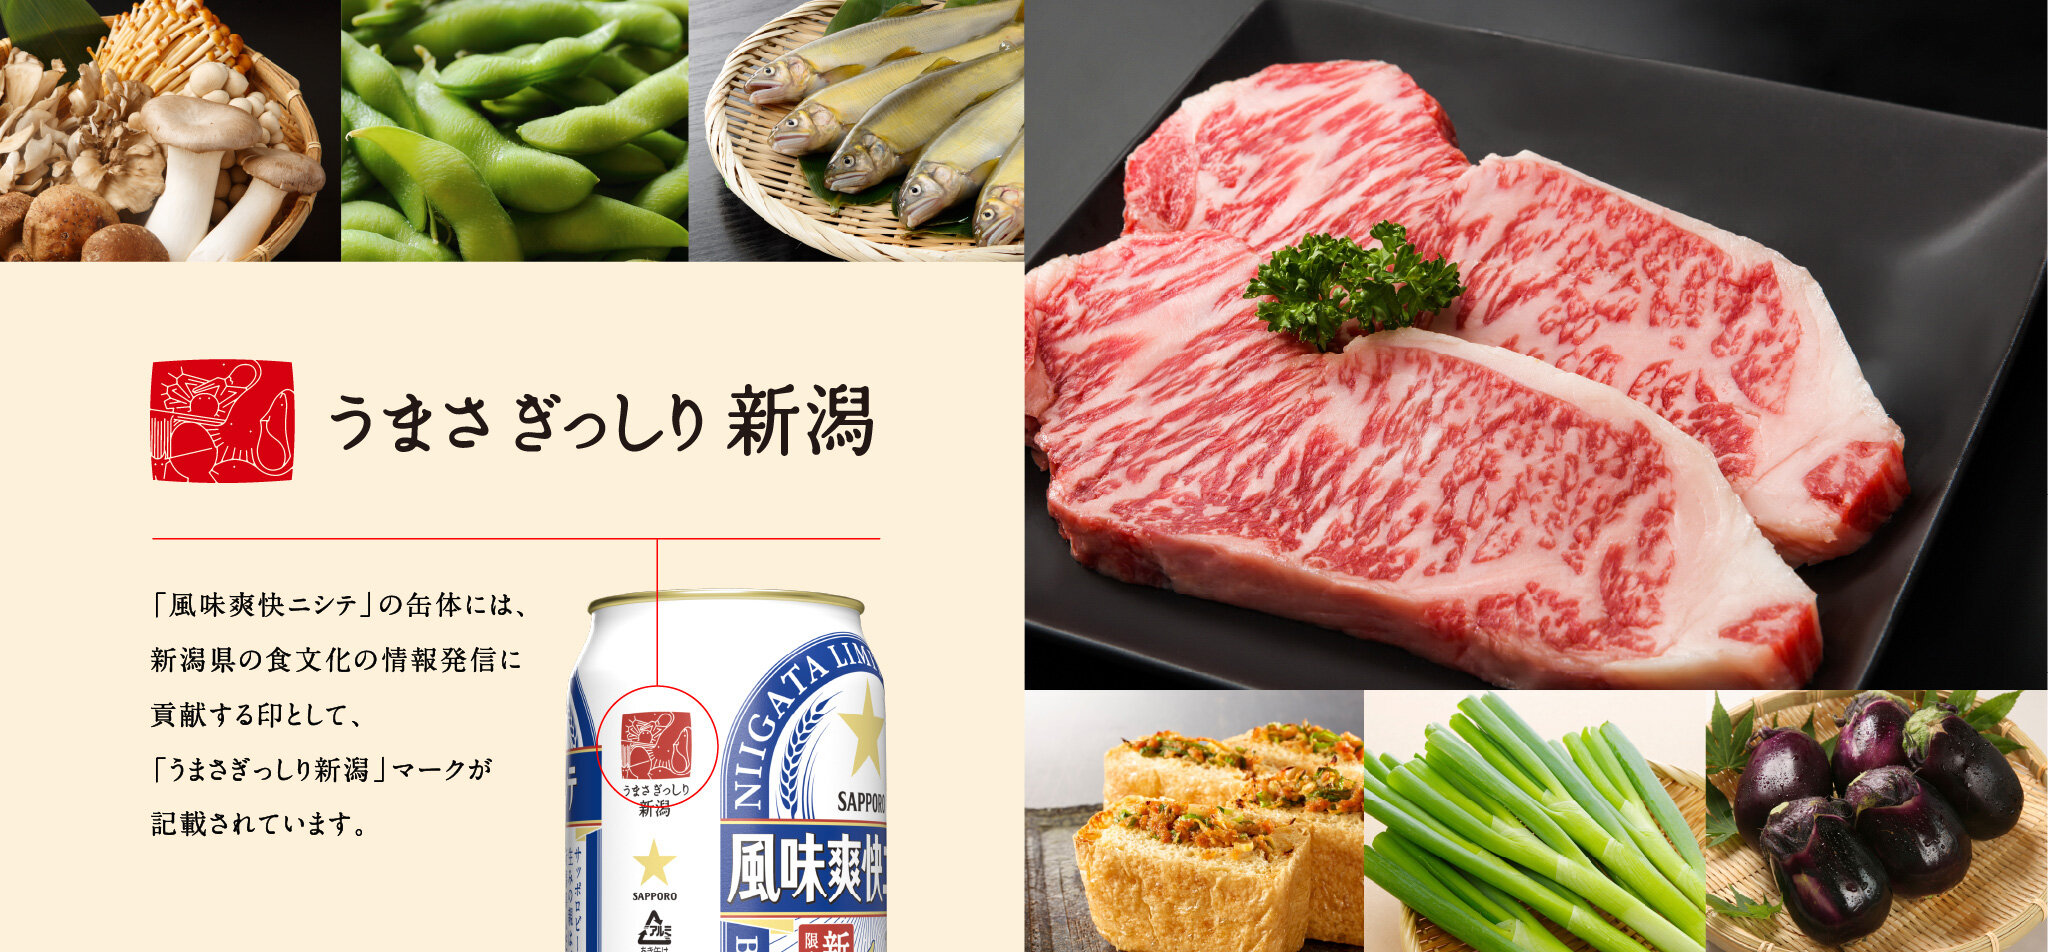 うまさぎっしり新潟　「風味爽快ニシテ」の缶体には、新潟県の食文化の情報発信に貢献する印として、「うまさぎっしり新潟」マークが記載されています。